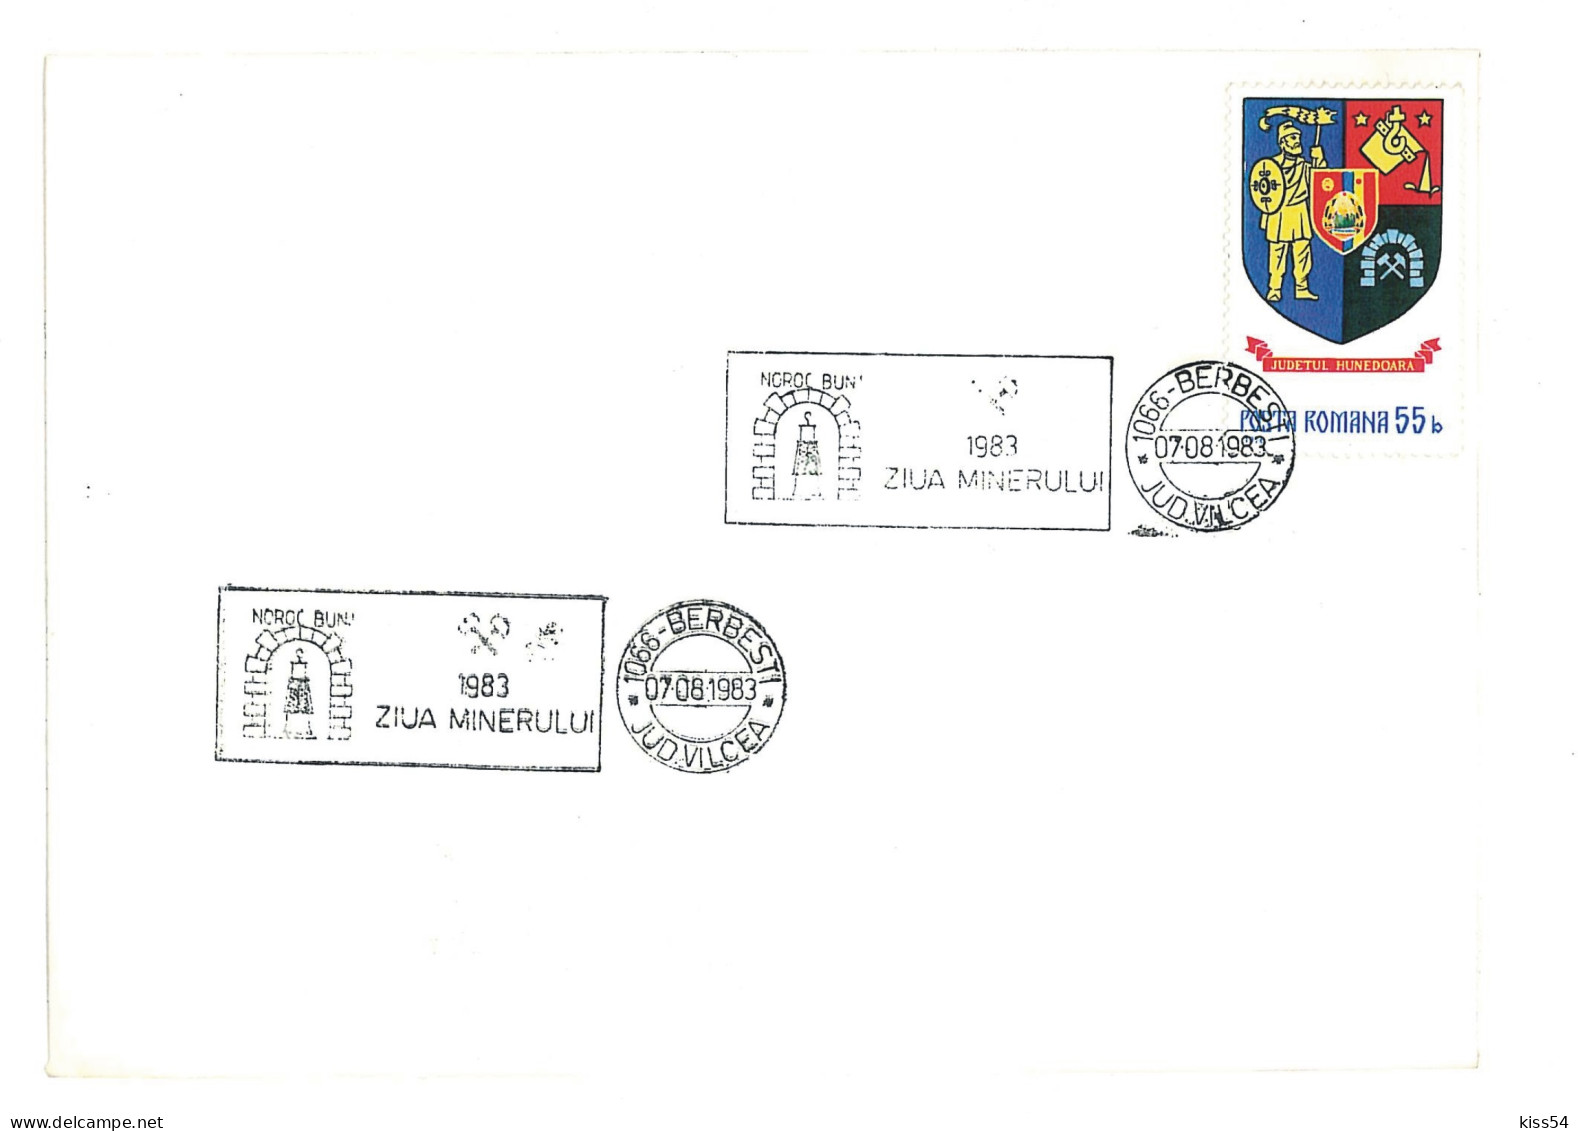 COV 35 - 2056, MINER Day, Romania - Cover - Used - 1983 - Briefe U. Dokumente